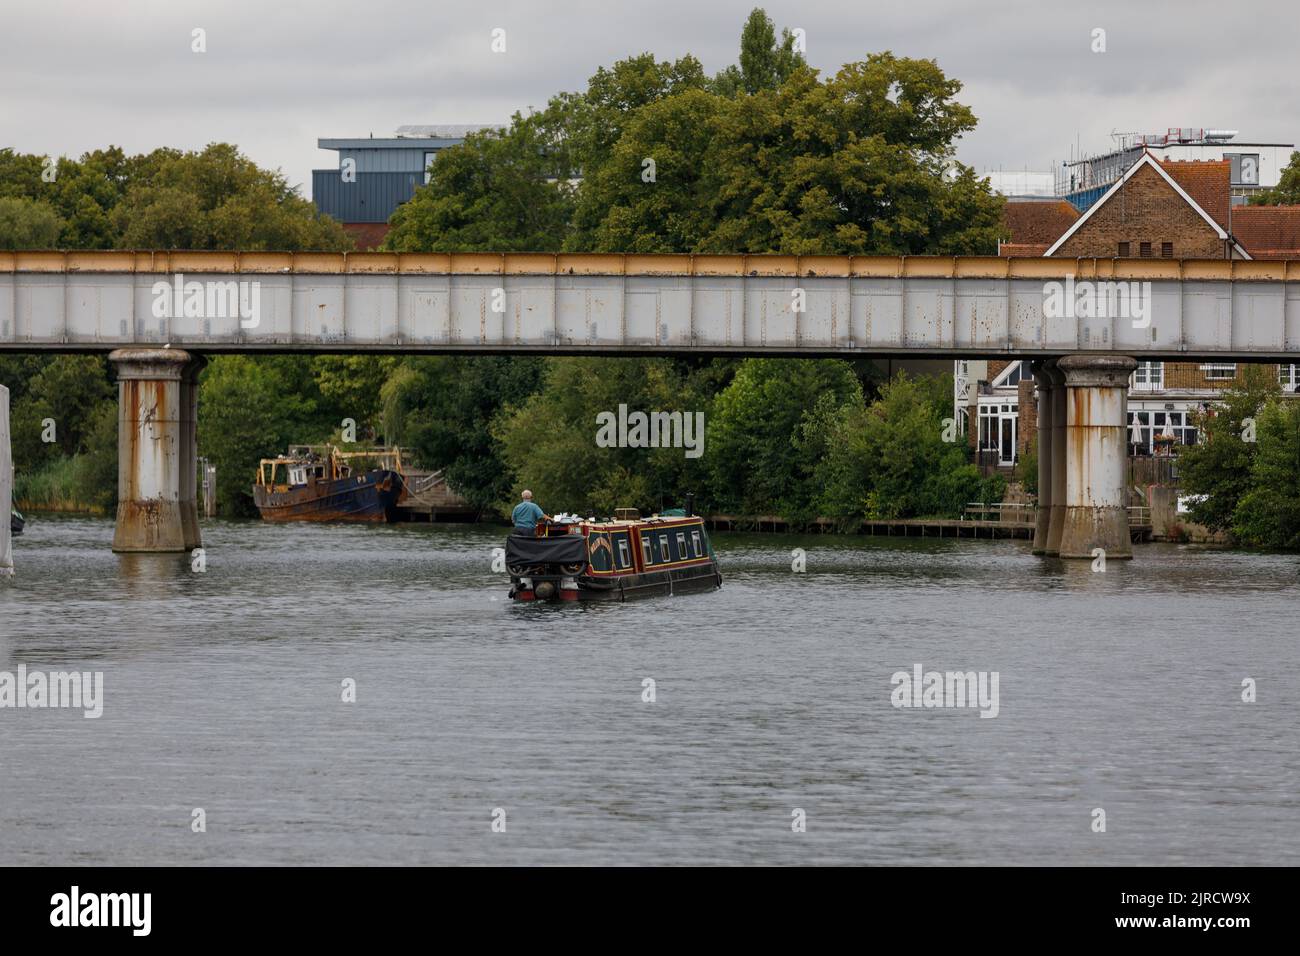 Un barge anglais traditionnel se déplace le long de la Tamise, sous le pont ferroviaire en fer de Staines on Thames, le jour de l'été Banque D'Images